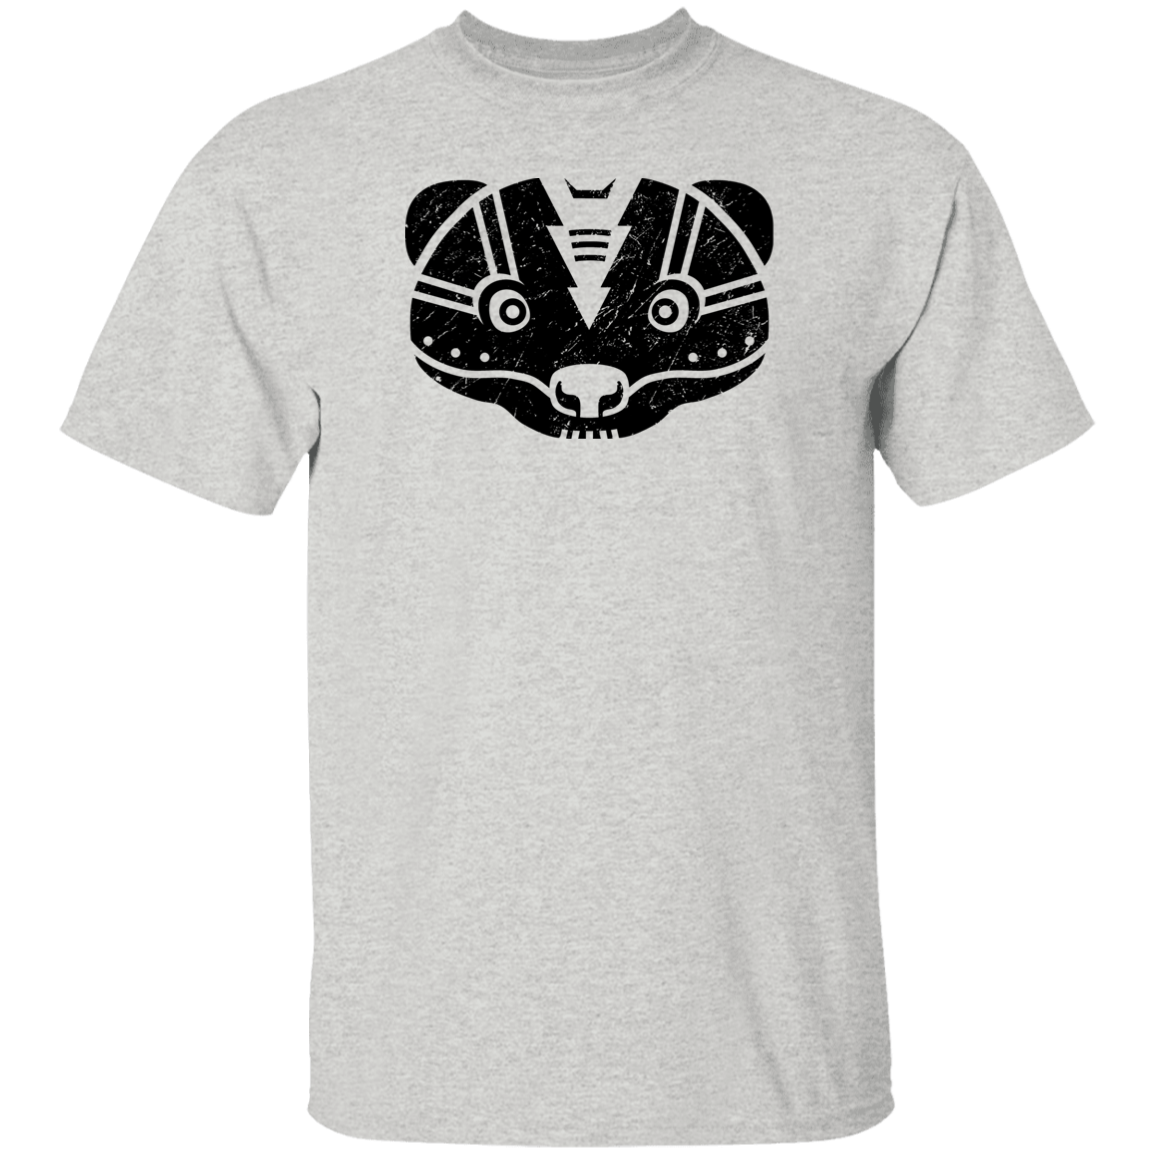 Black Distressed Emblem T-Shirt for Kids (Skunk/Stinker)